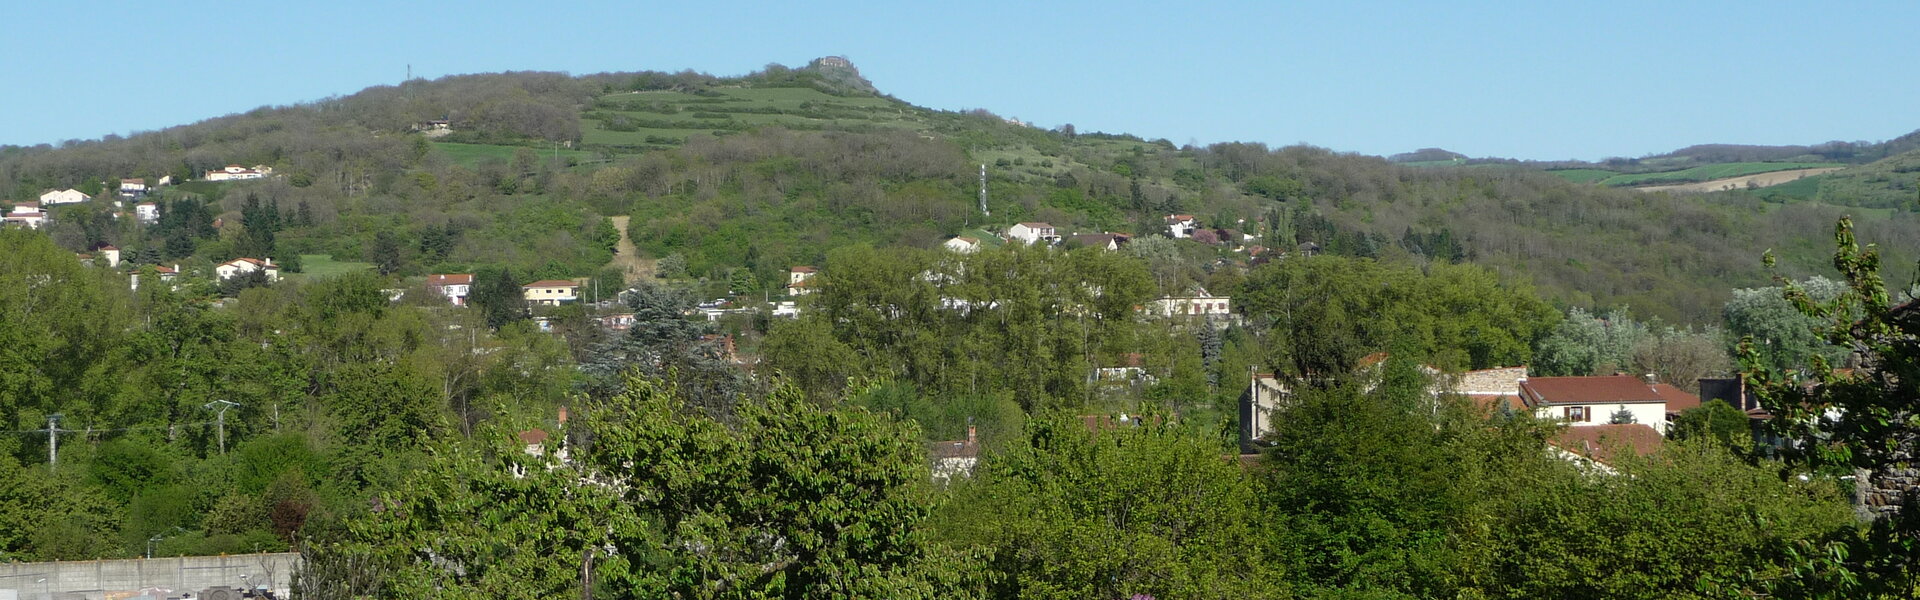 Commune de Coudes dans le Puy-de-Dôme